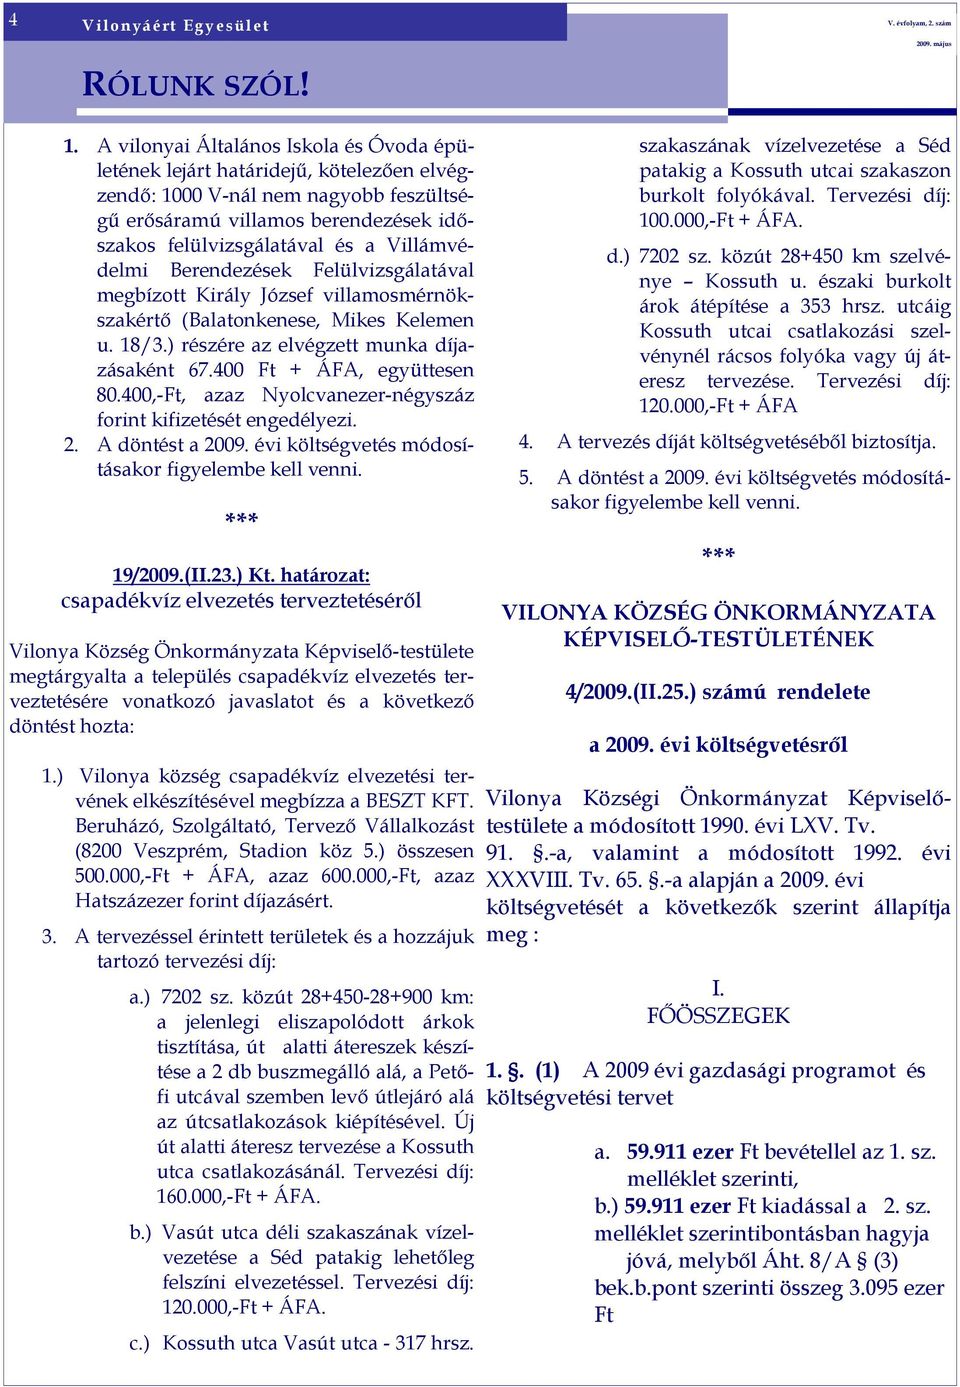 Villámvédelmi Berendezések Felülvizsgálatával megbízott Király József villamosmérnökszakértı (Balatonkenese, Mikes Kelemen u. 18/3.) részére az elvégzett munka díjazásaként 67.